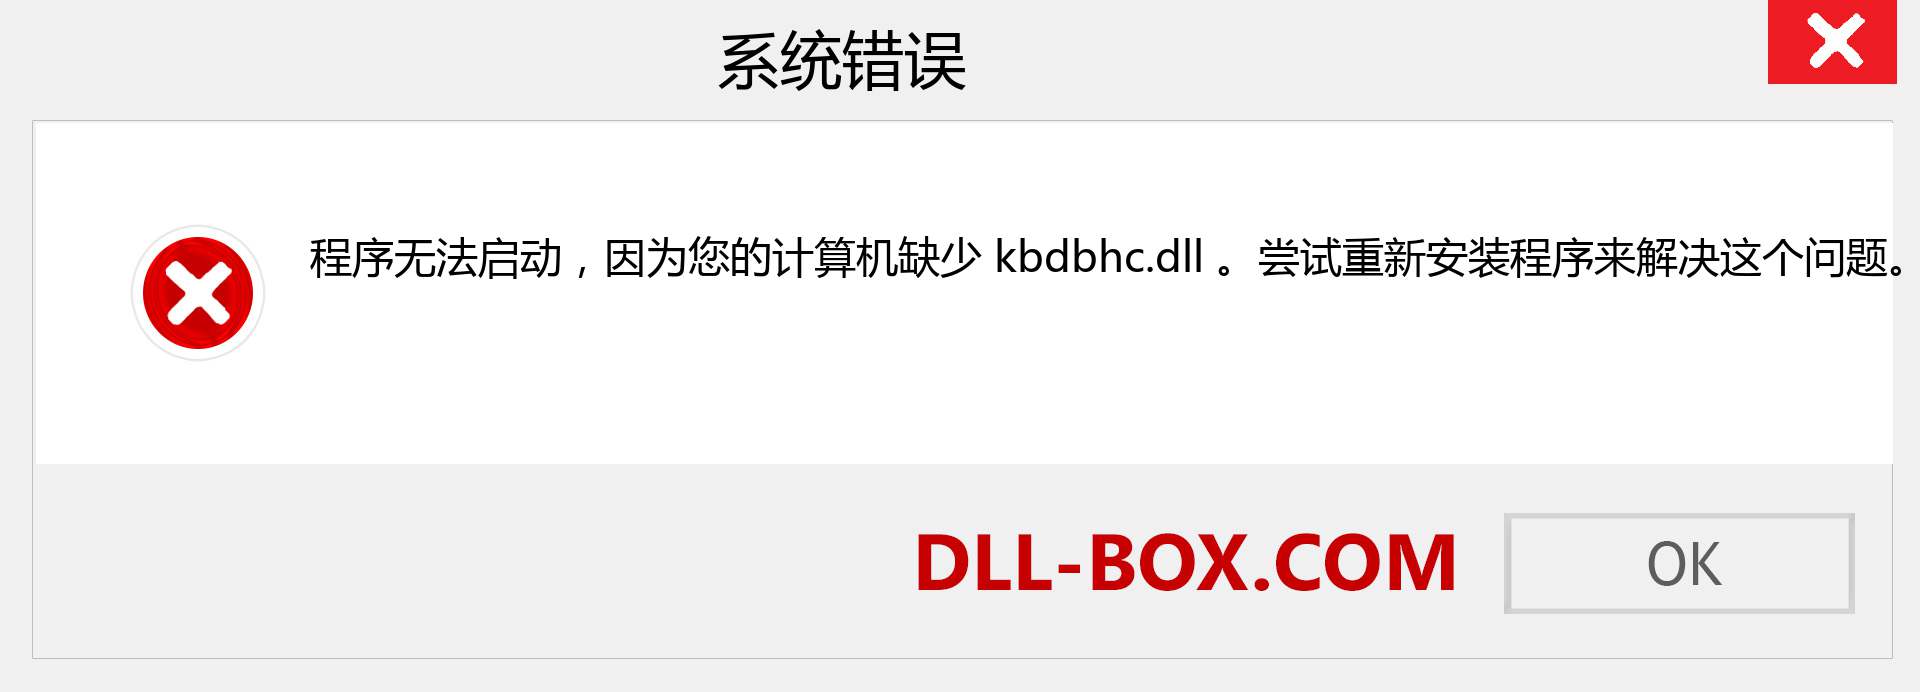 kbdbhc.dll 文件丢失？。 适用于 Windows 7、8、10 的下载 - 修复 Windows、照片、图像上的 kbdbhc dll 丢失错误